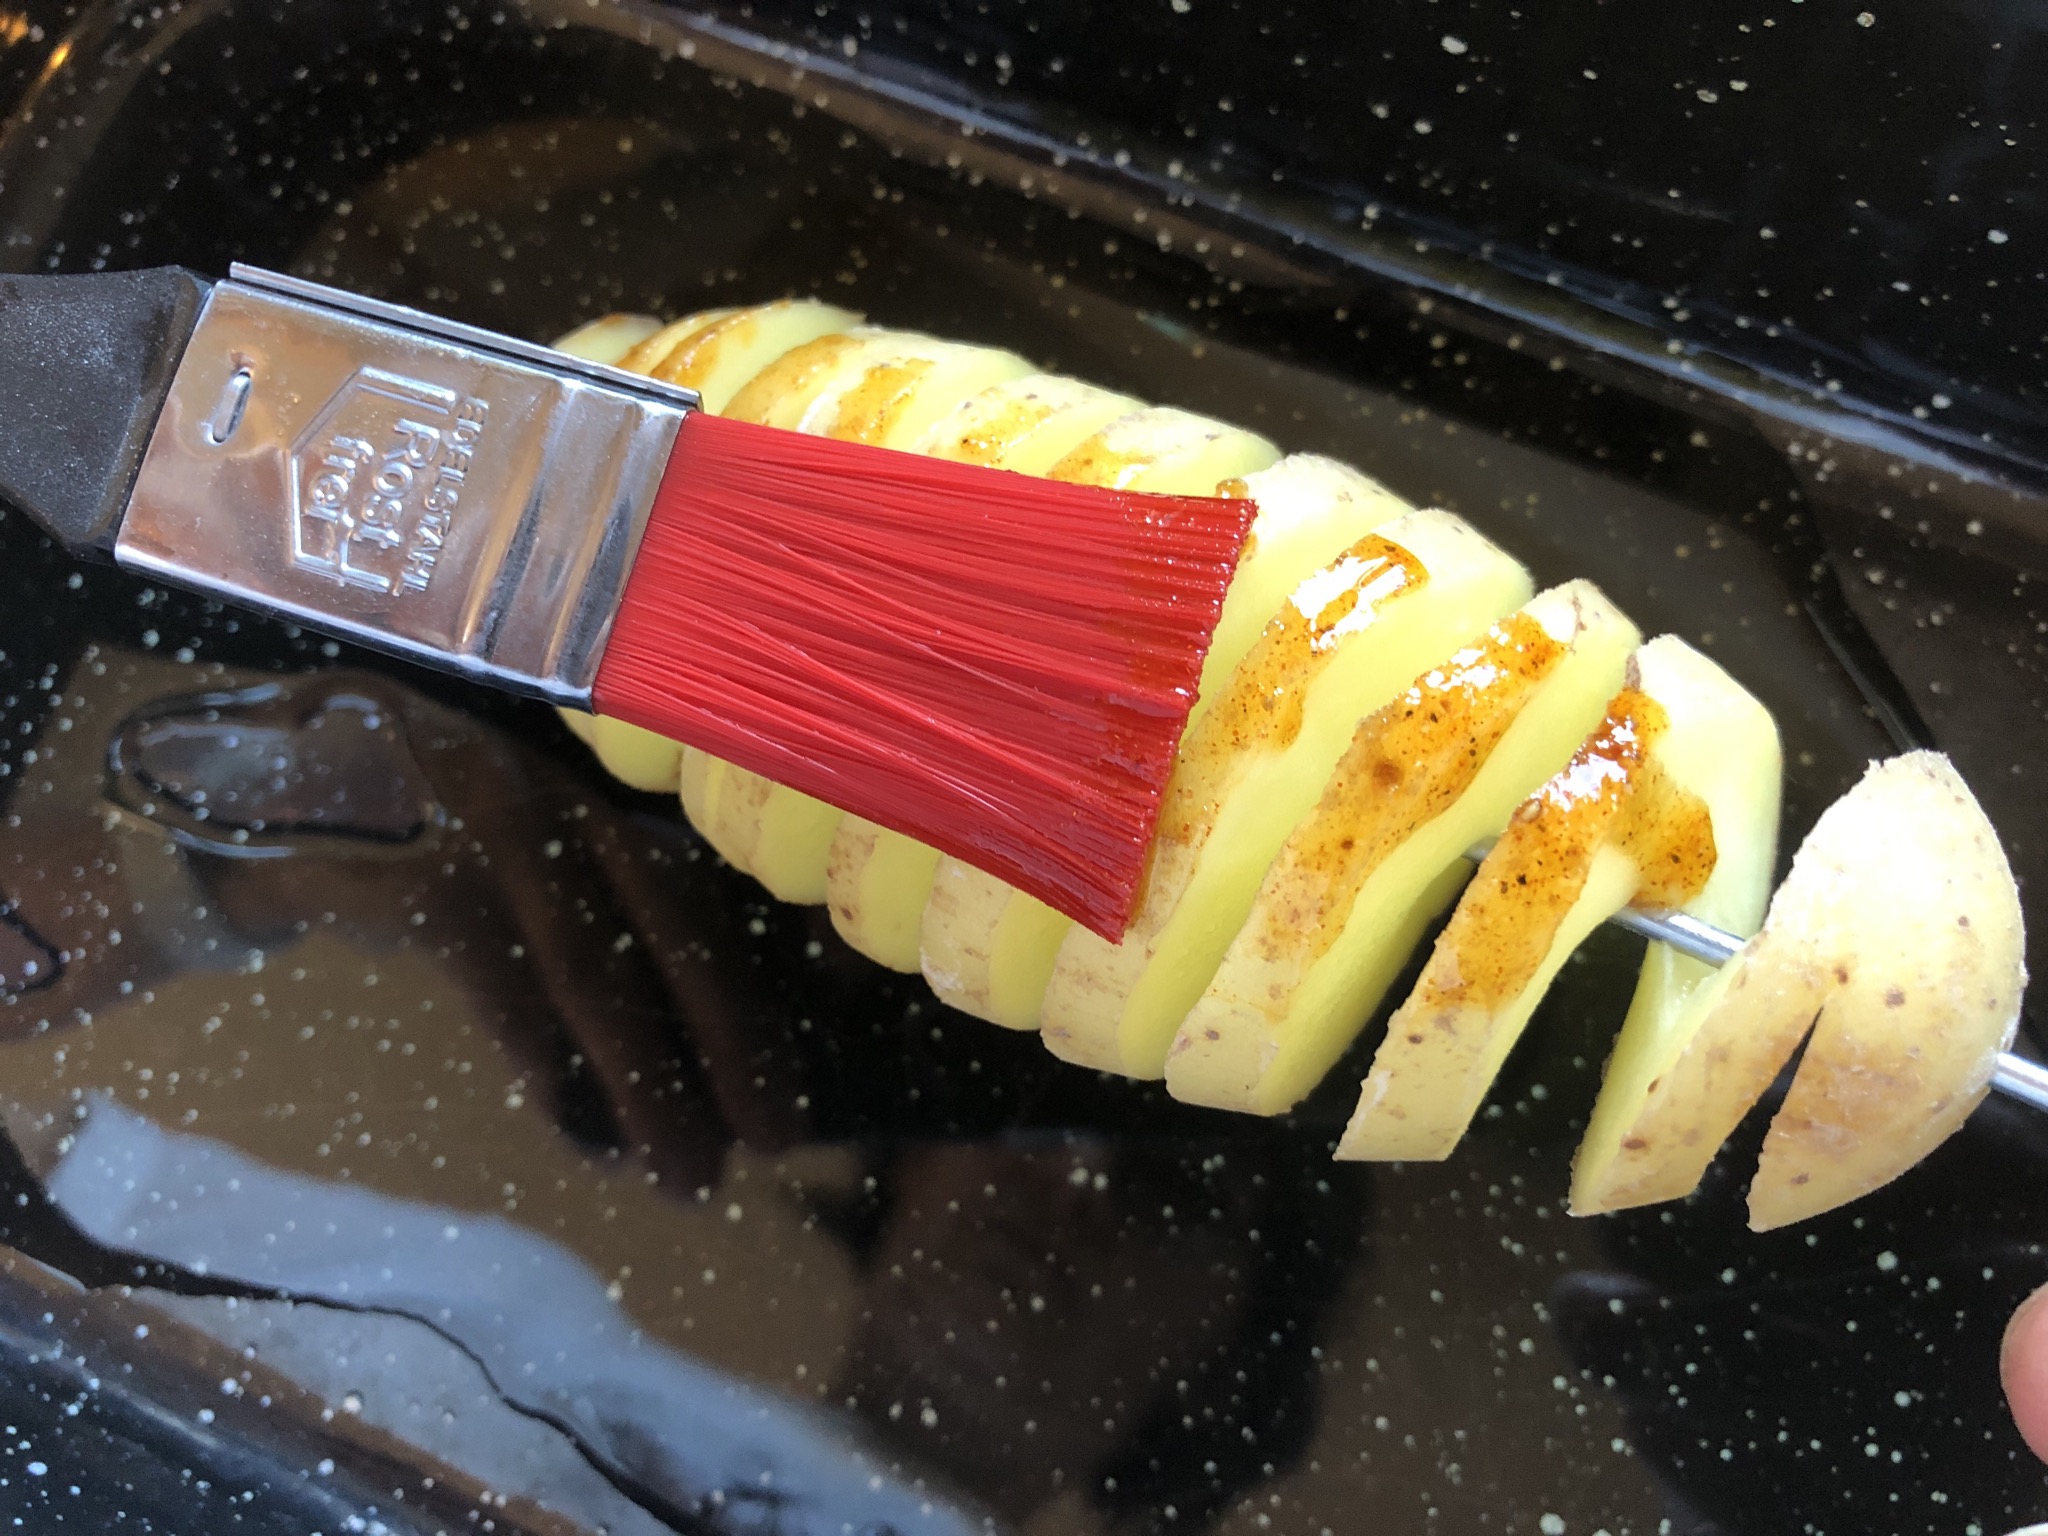 Bild zum Schritt 11 für die Kinder-Beschäftigung: 'Diese Marinade mit einem Pinsel auf die Kartoffeln aufgetragen. Die...'